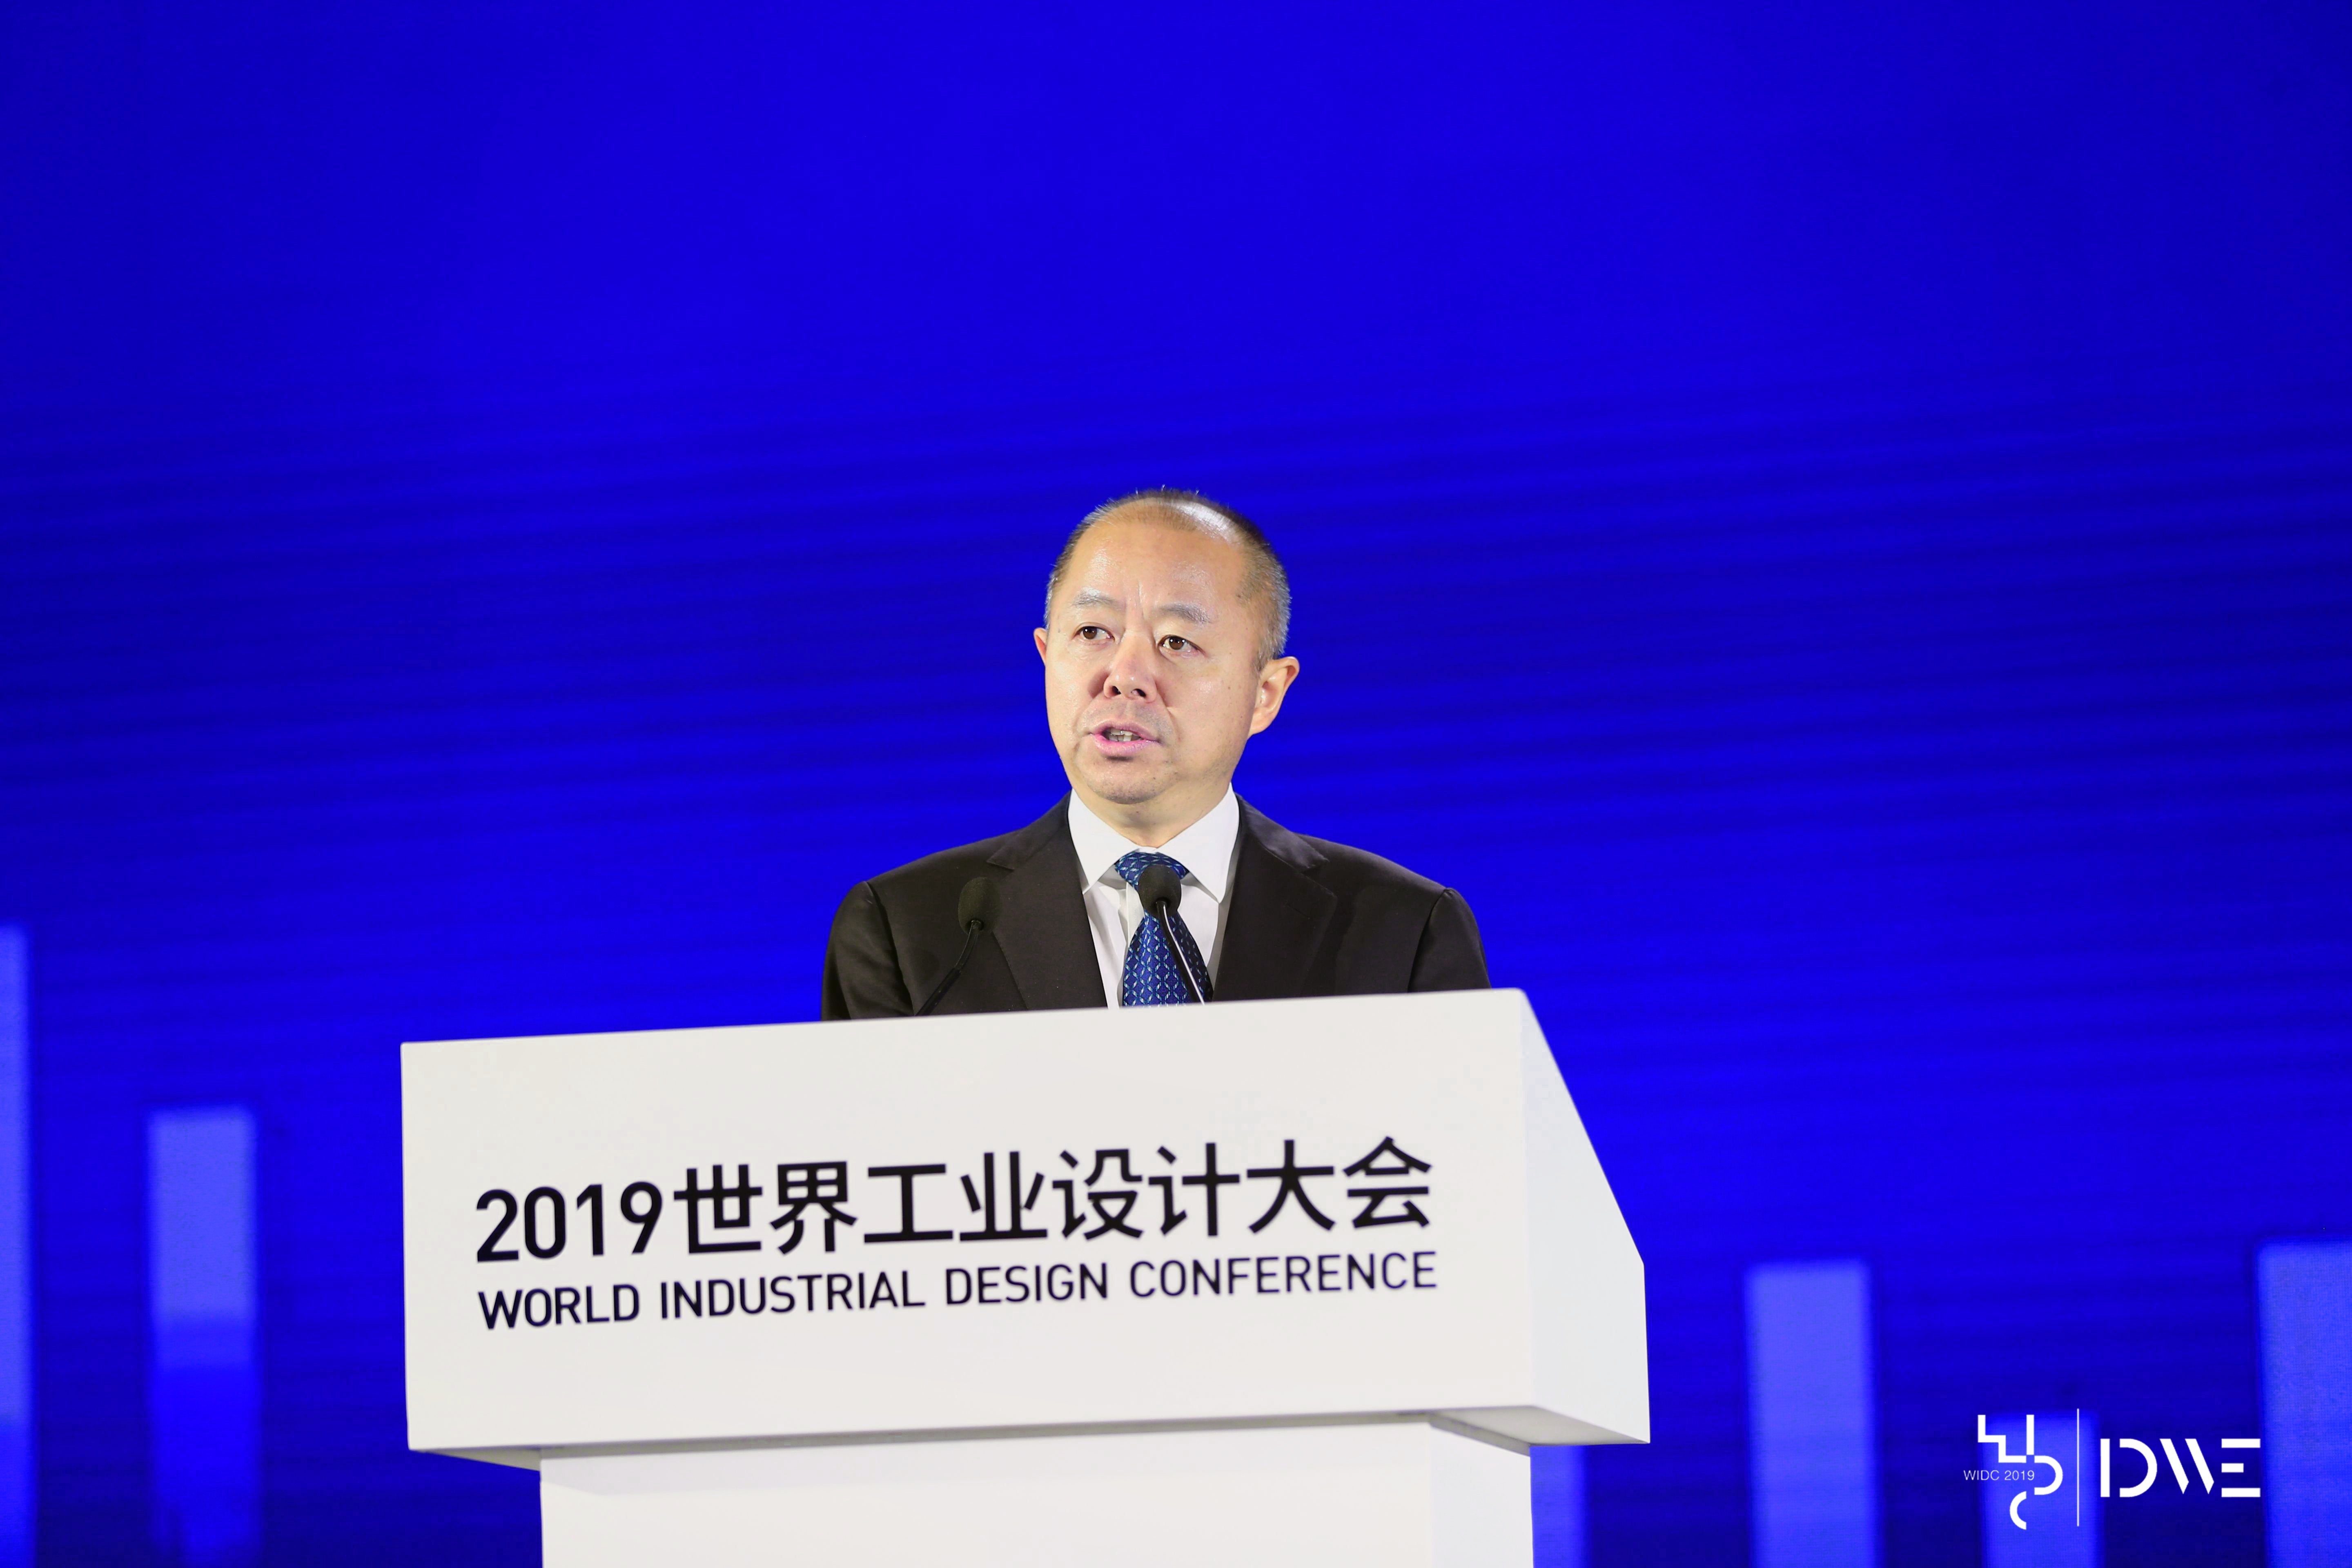 王江平出席2019世界工业设计大会并调研